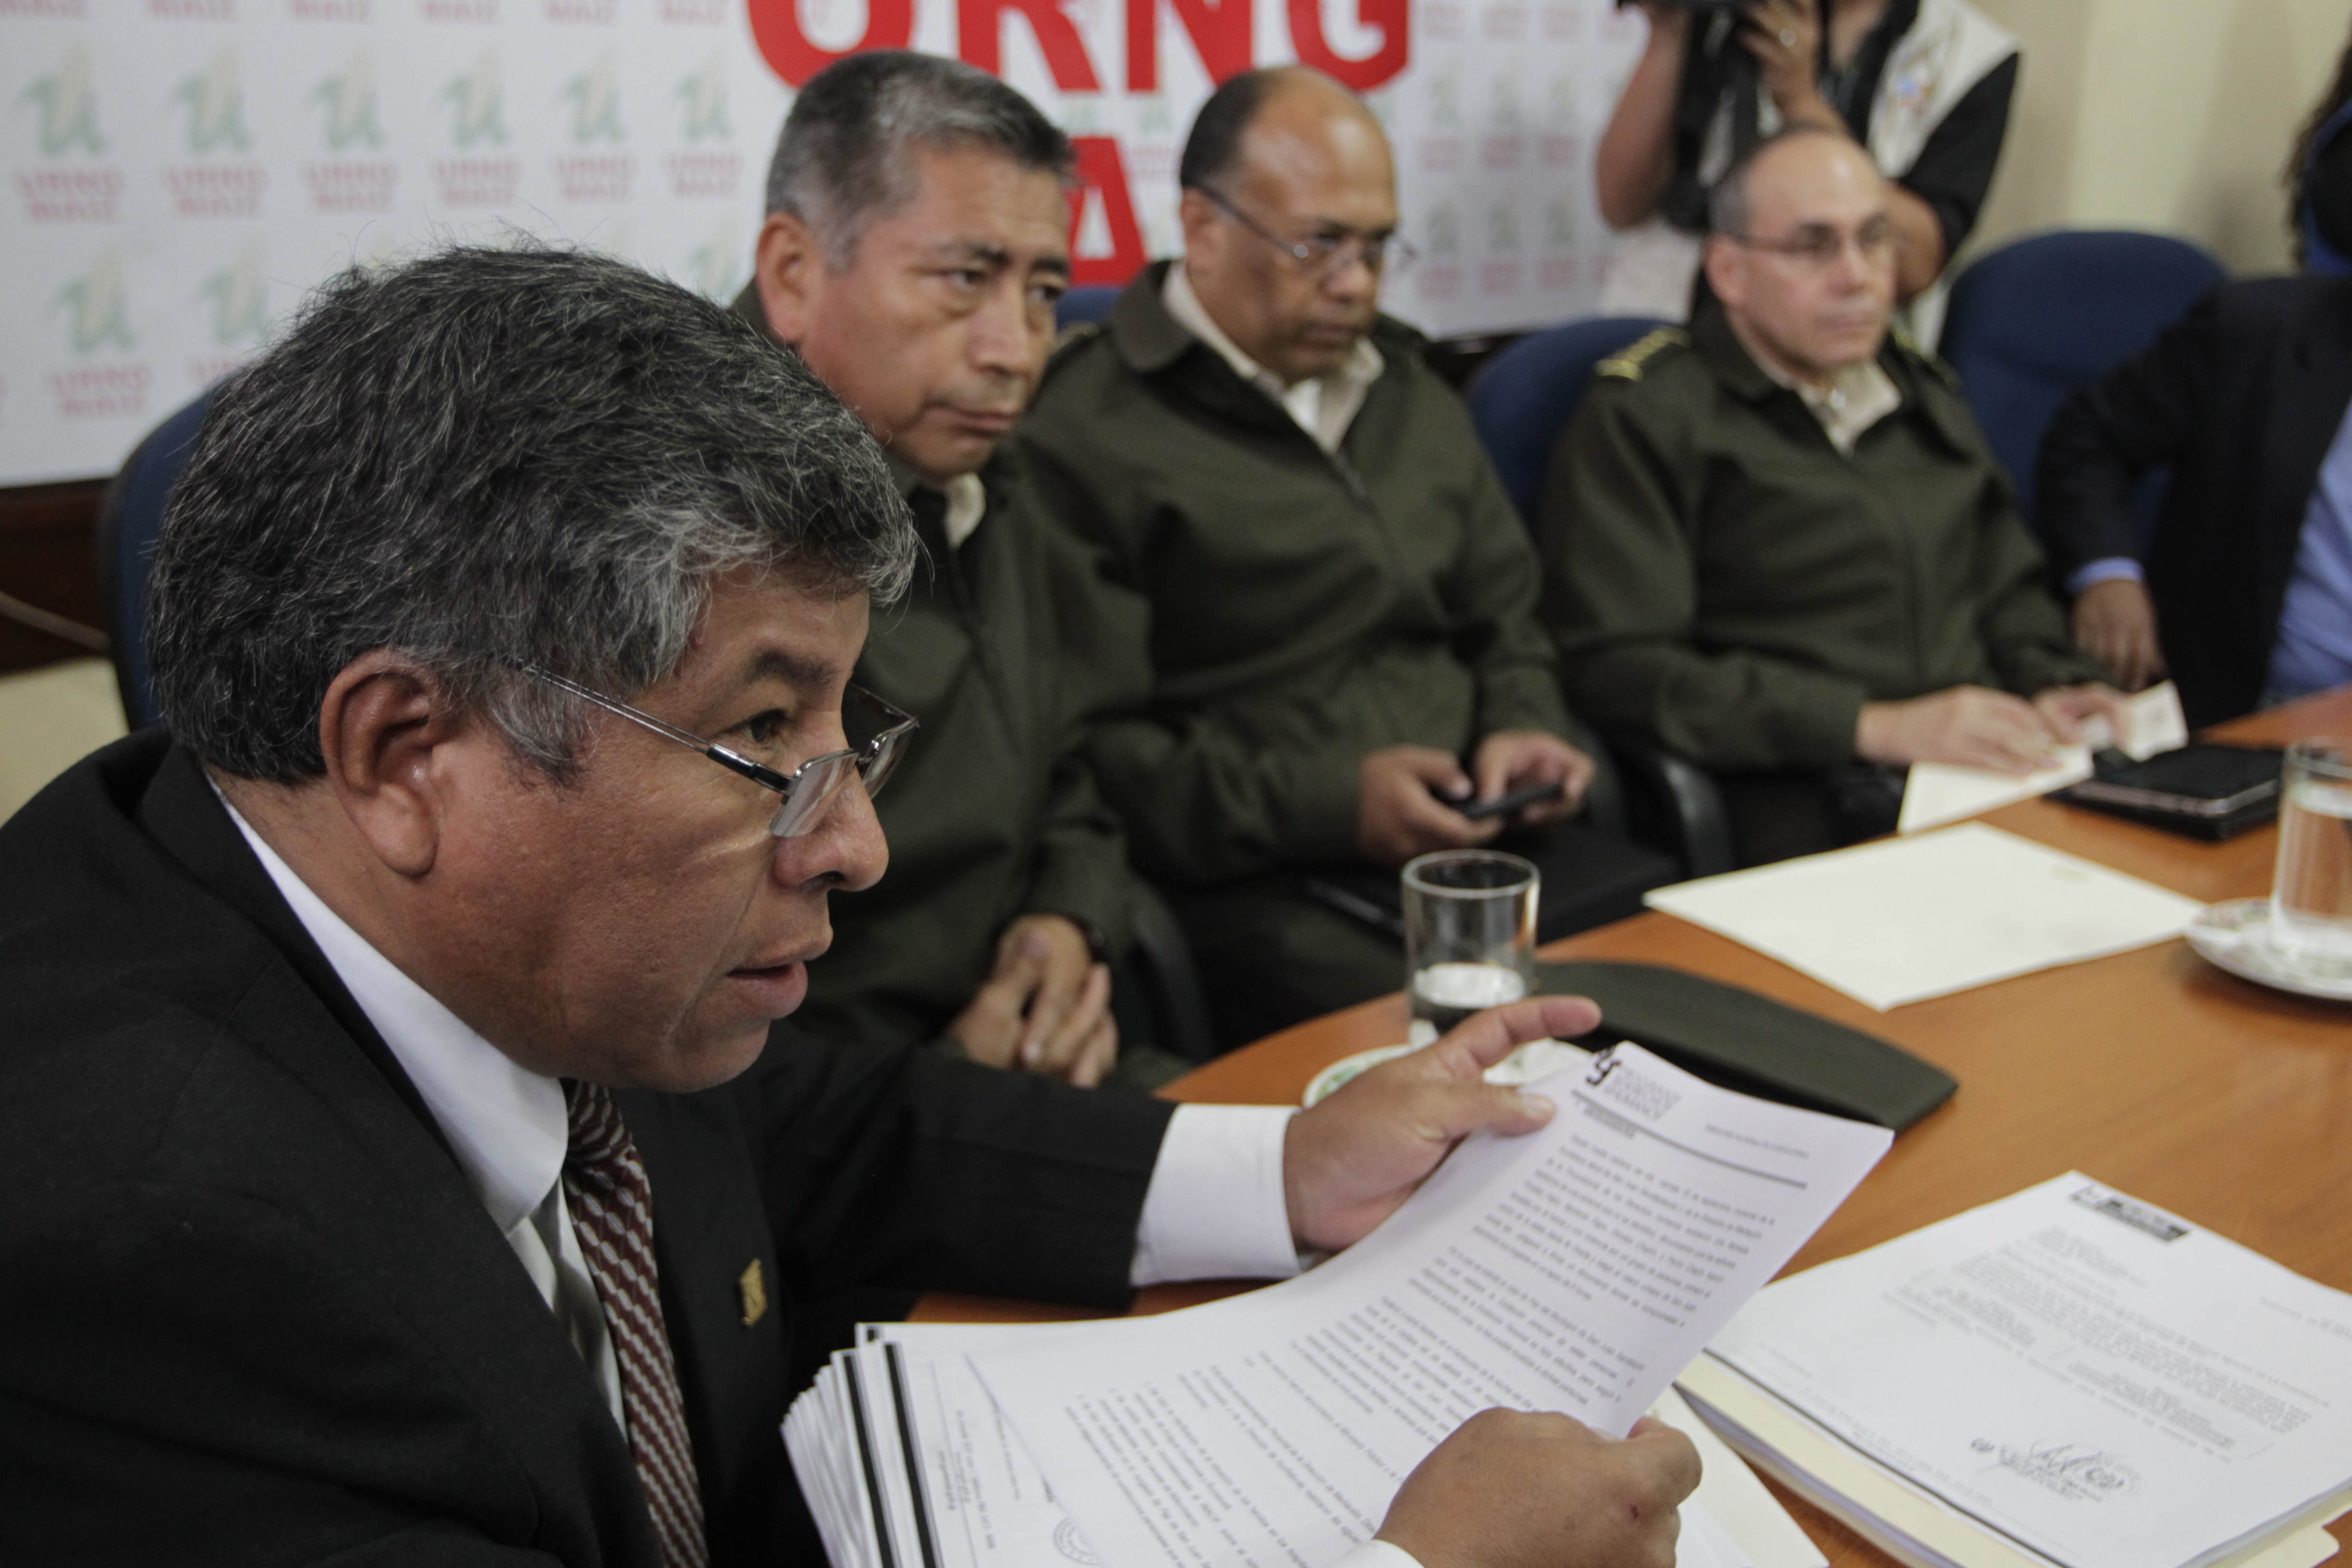 El exdiputado Carlos Mejía buscar ser de nuevo diputado, a pesar de los señalamientos de corrupción en su contra.